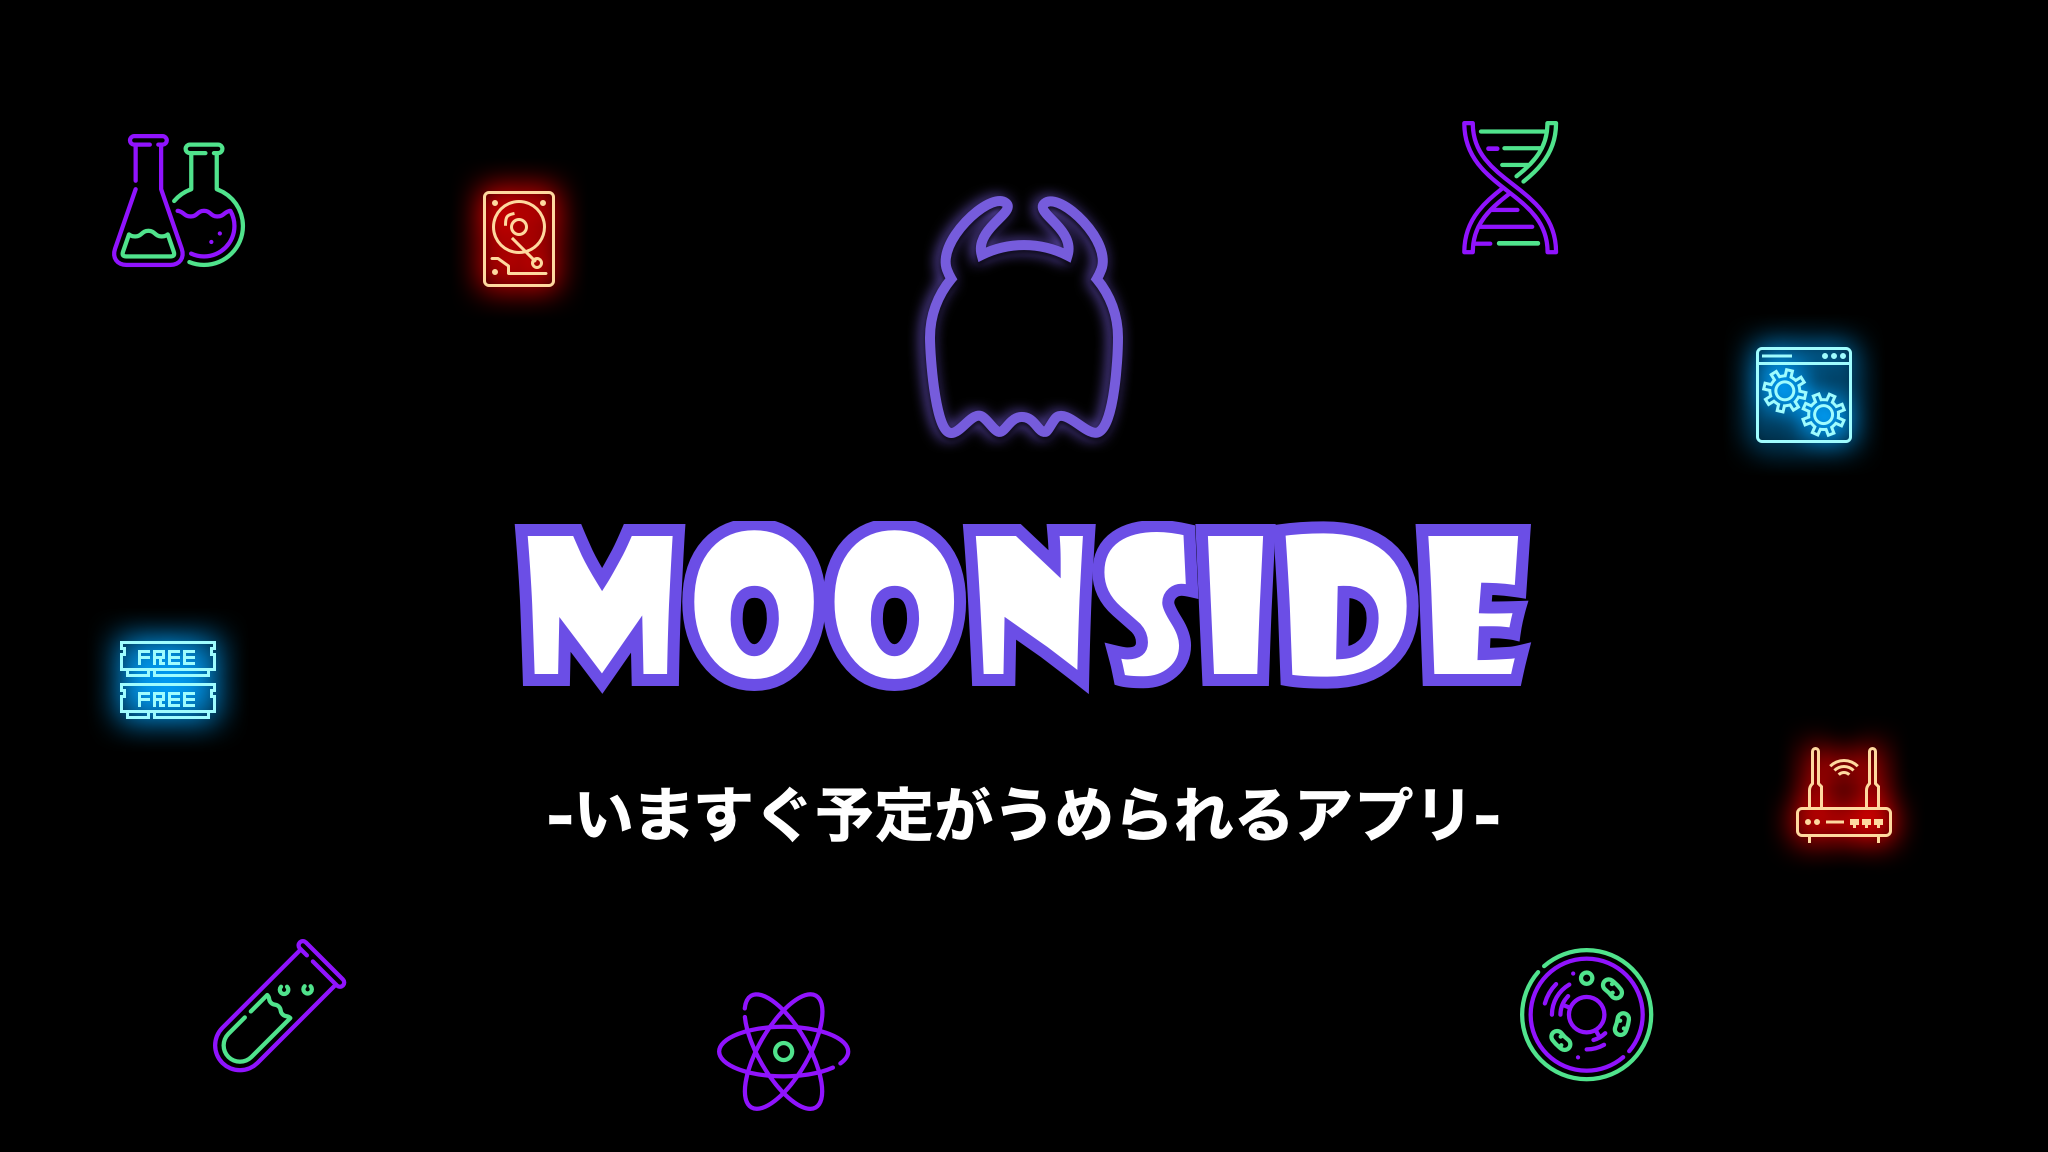 Moonside ムーンサイド の公開終了 新規事業に関するお知らせ 株式会社アダビト アダビトのプレスリリース